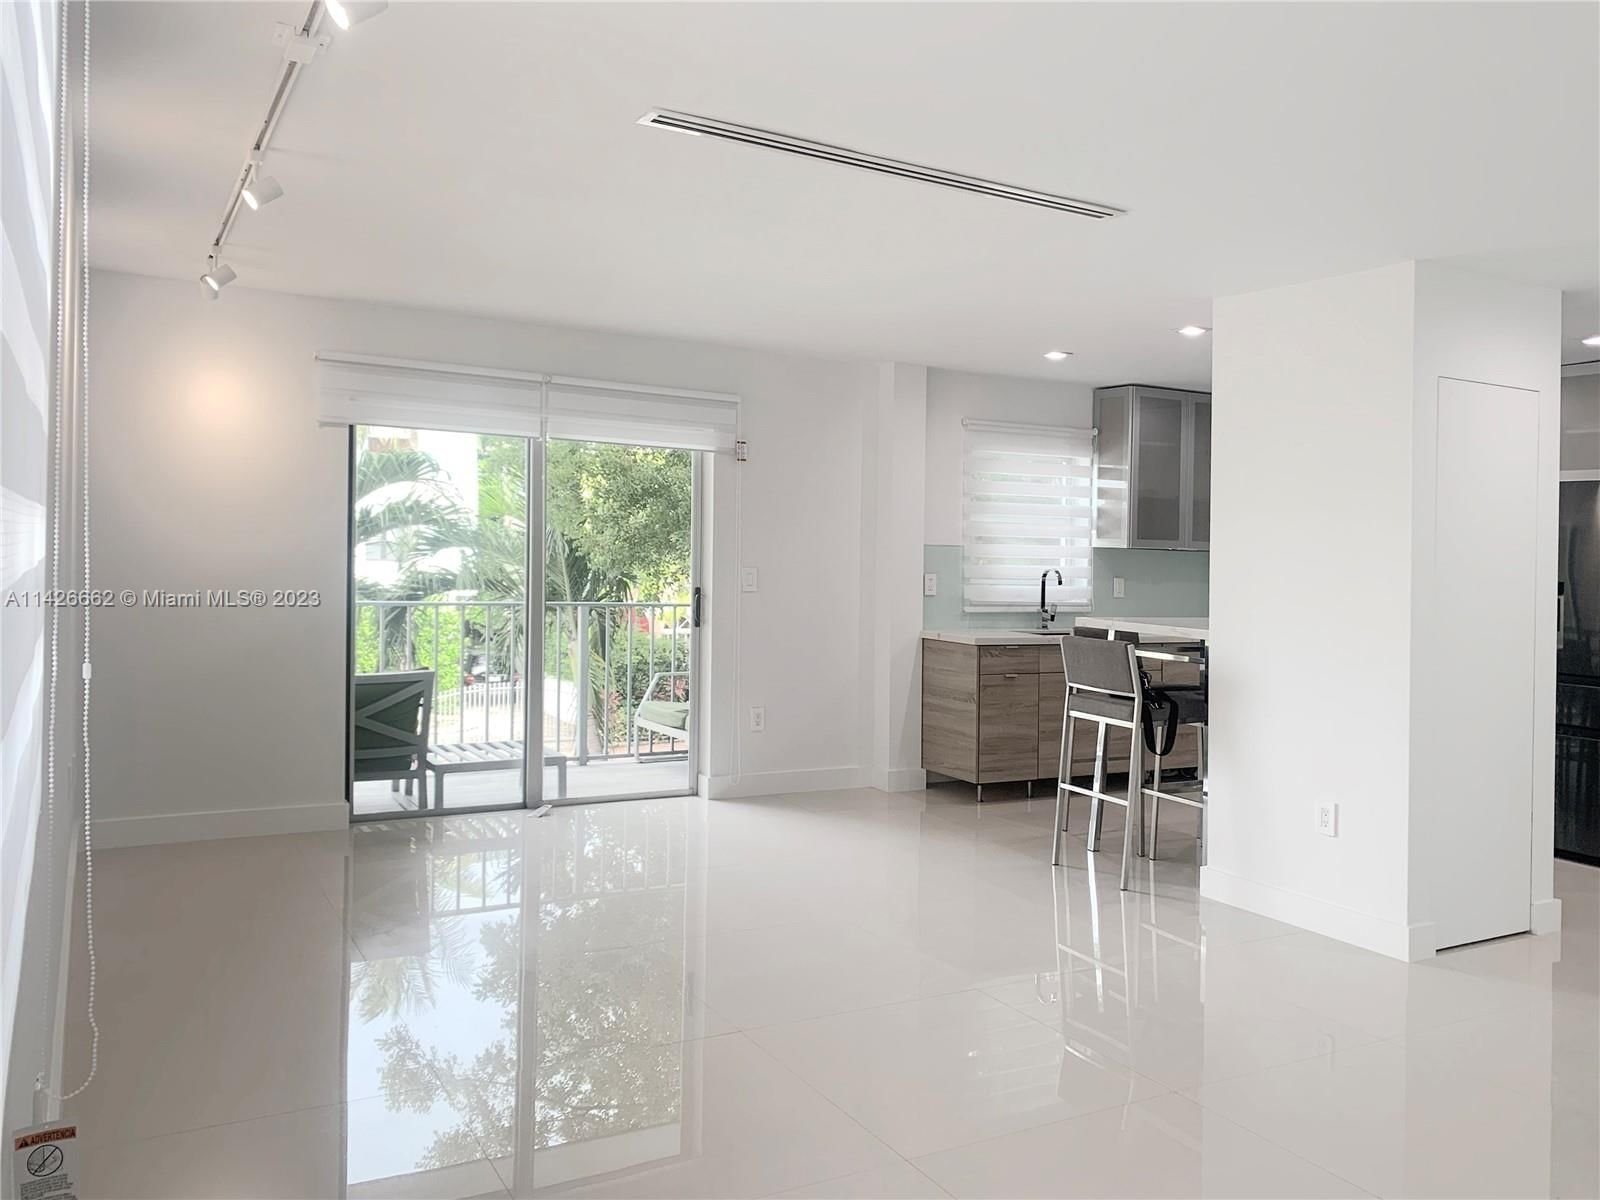 Real estate property located at 750 Michigan Ave #201, Miami-Dade County, Miami Beach, FL